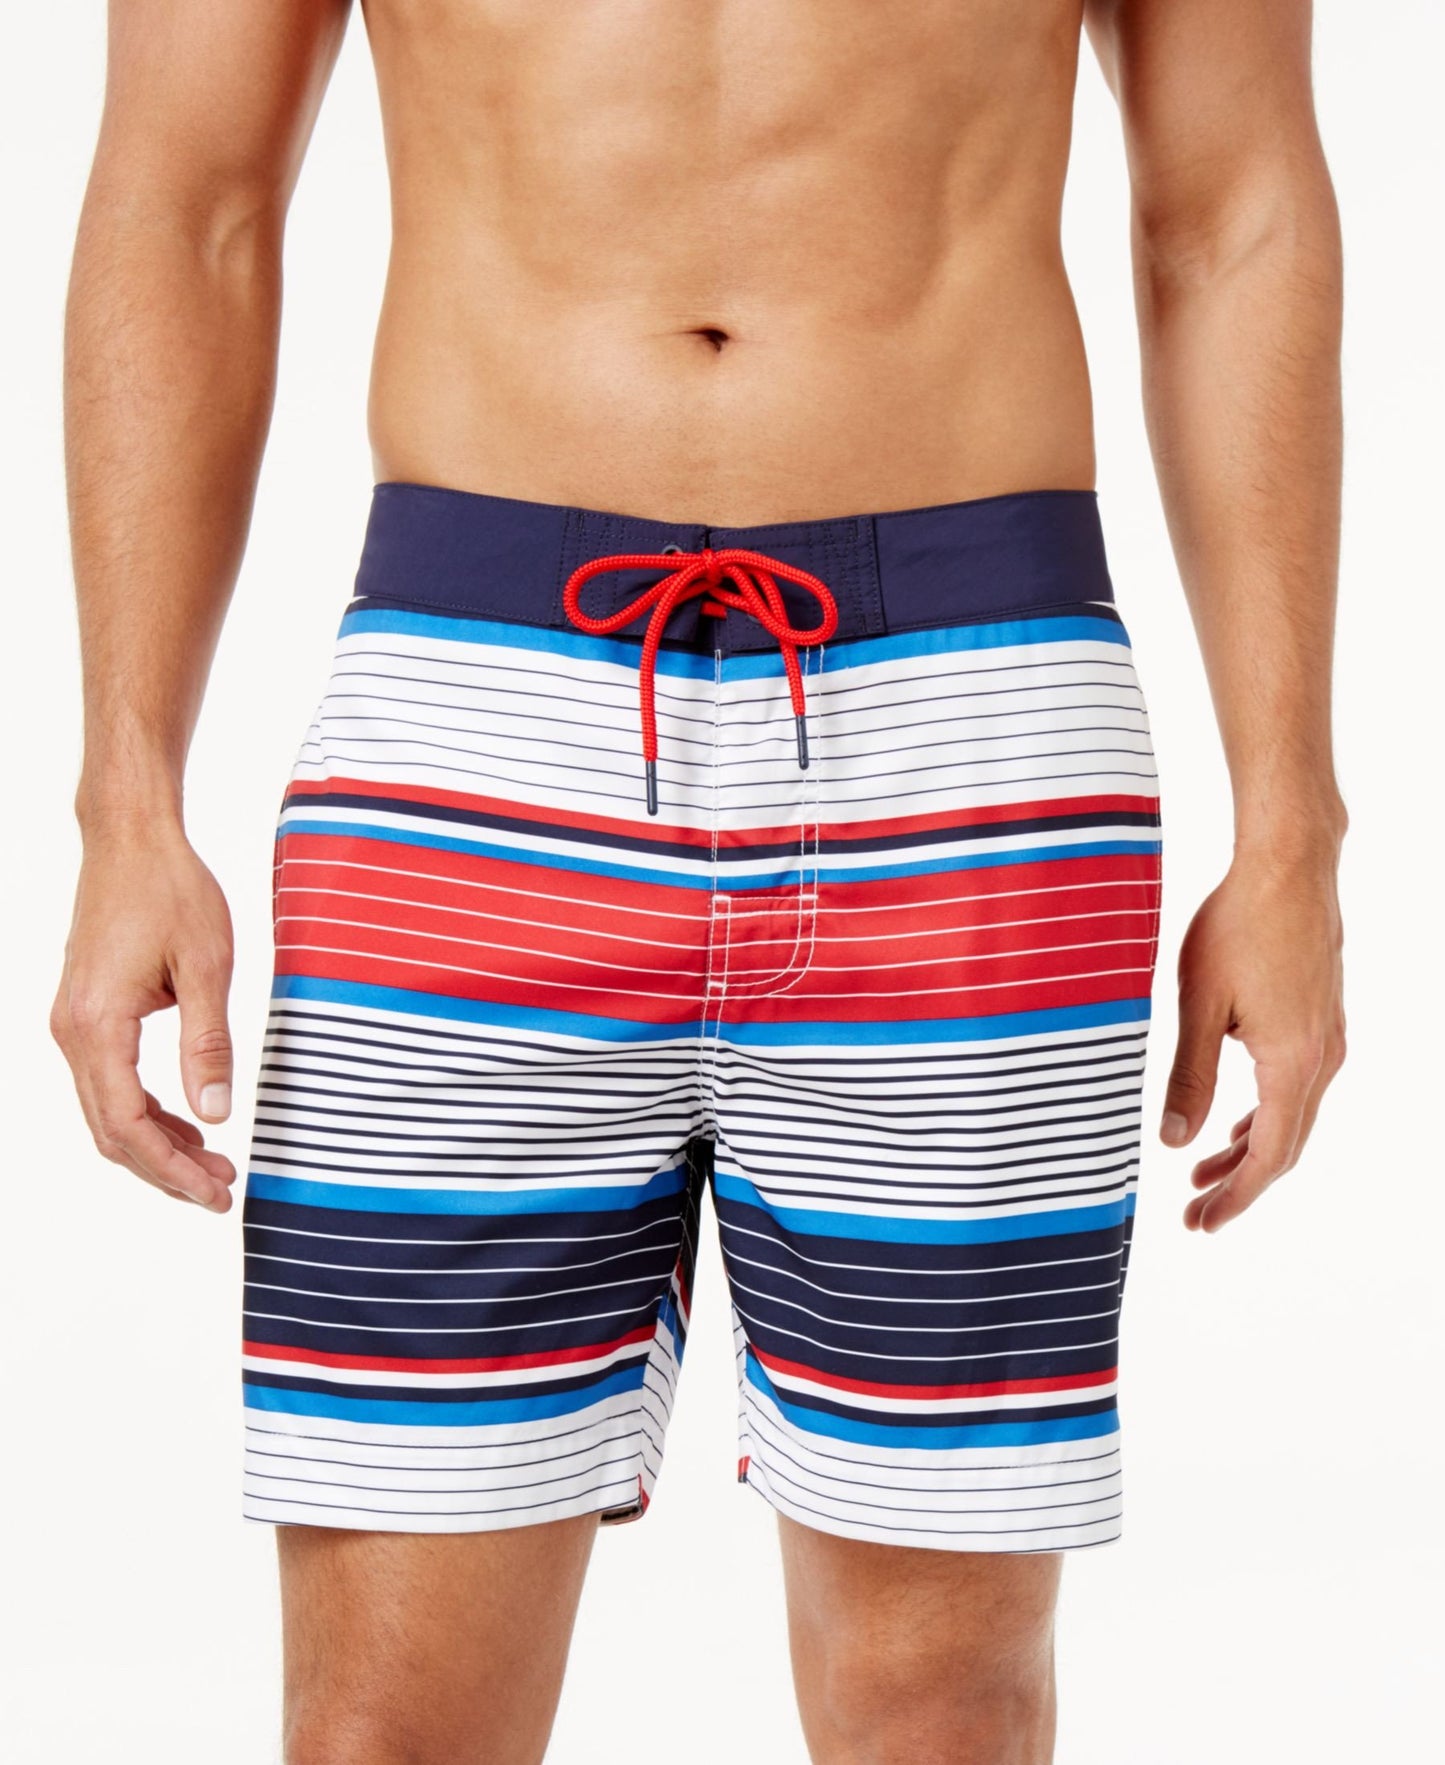 Tommy Hilfiger Men's Rhapsody Striped Board Shorts